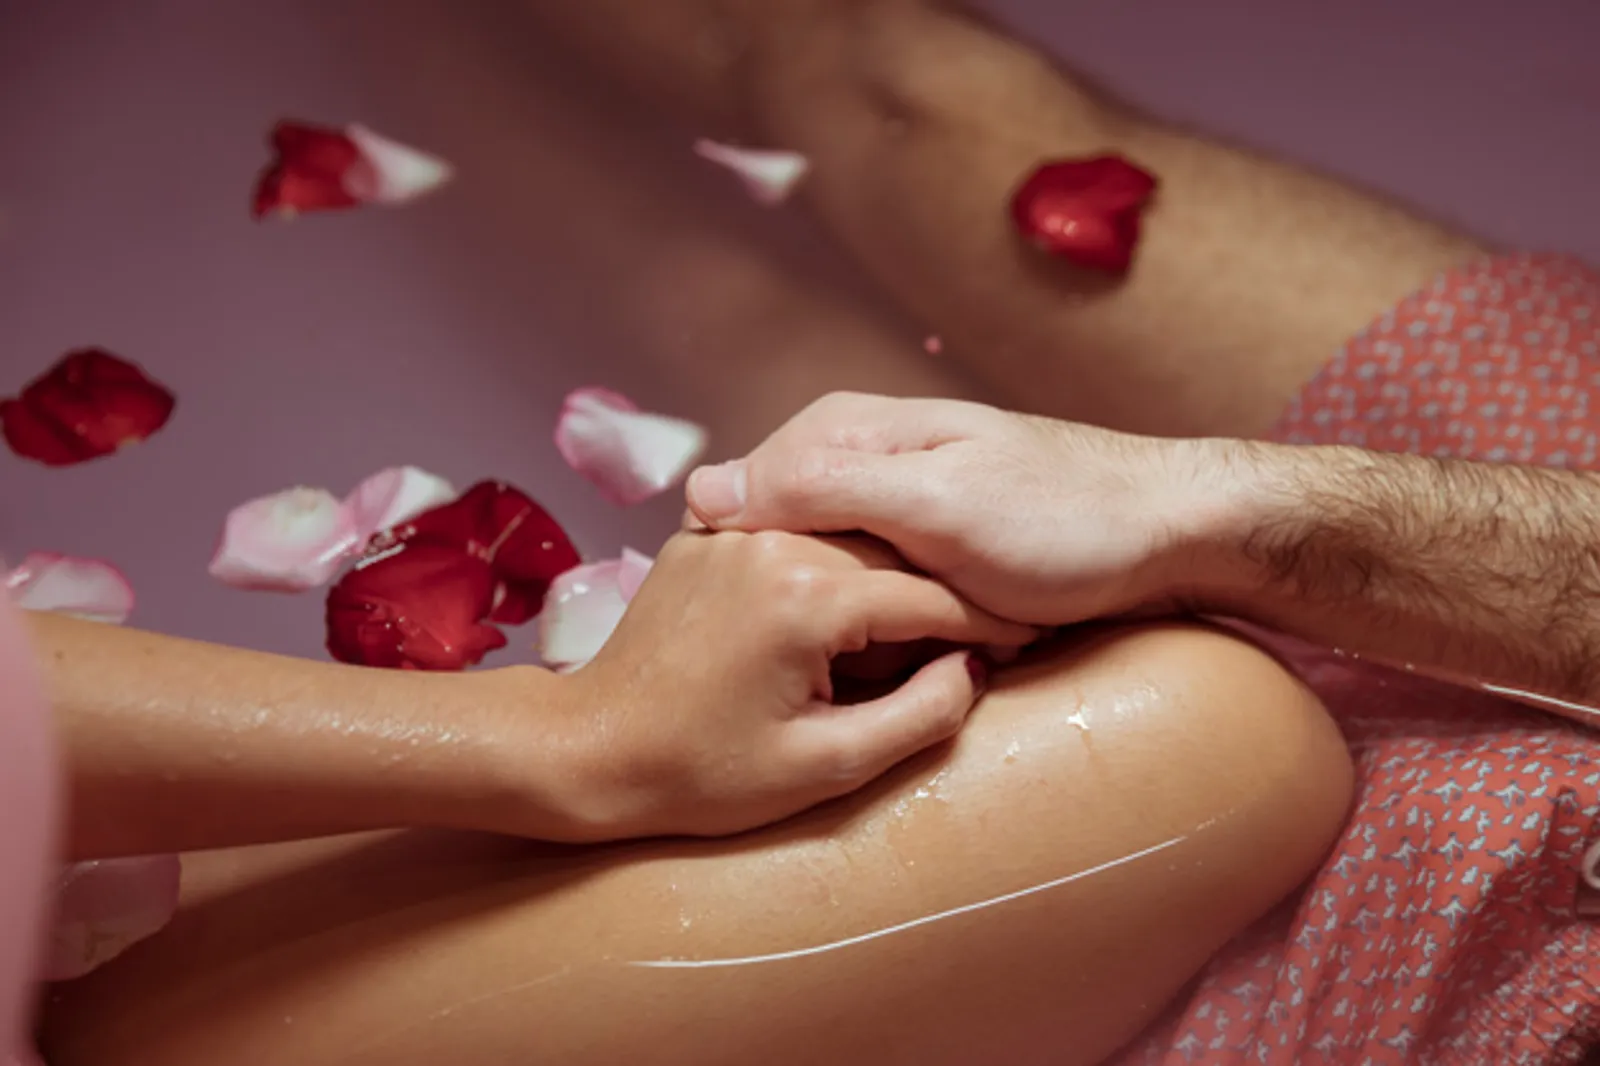 Supaya Nggak Canggung, Ini 7 Tips Melakukan Seks di Kamar Mandi